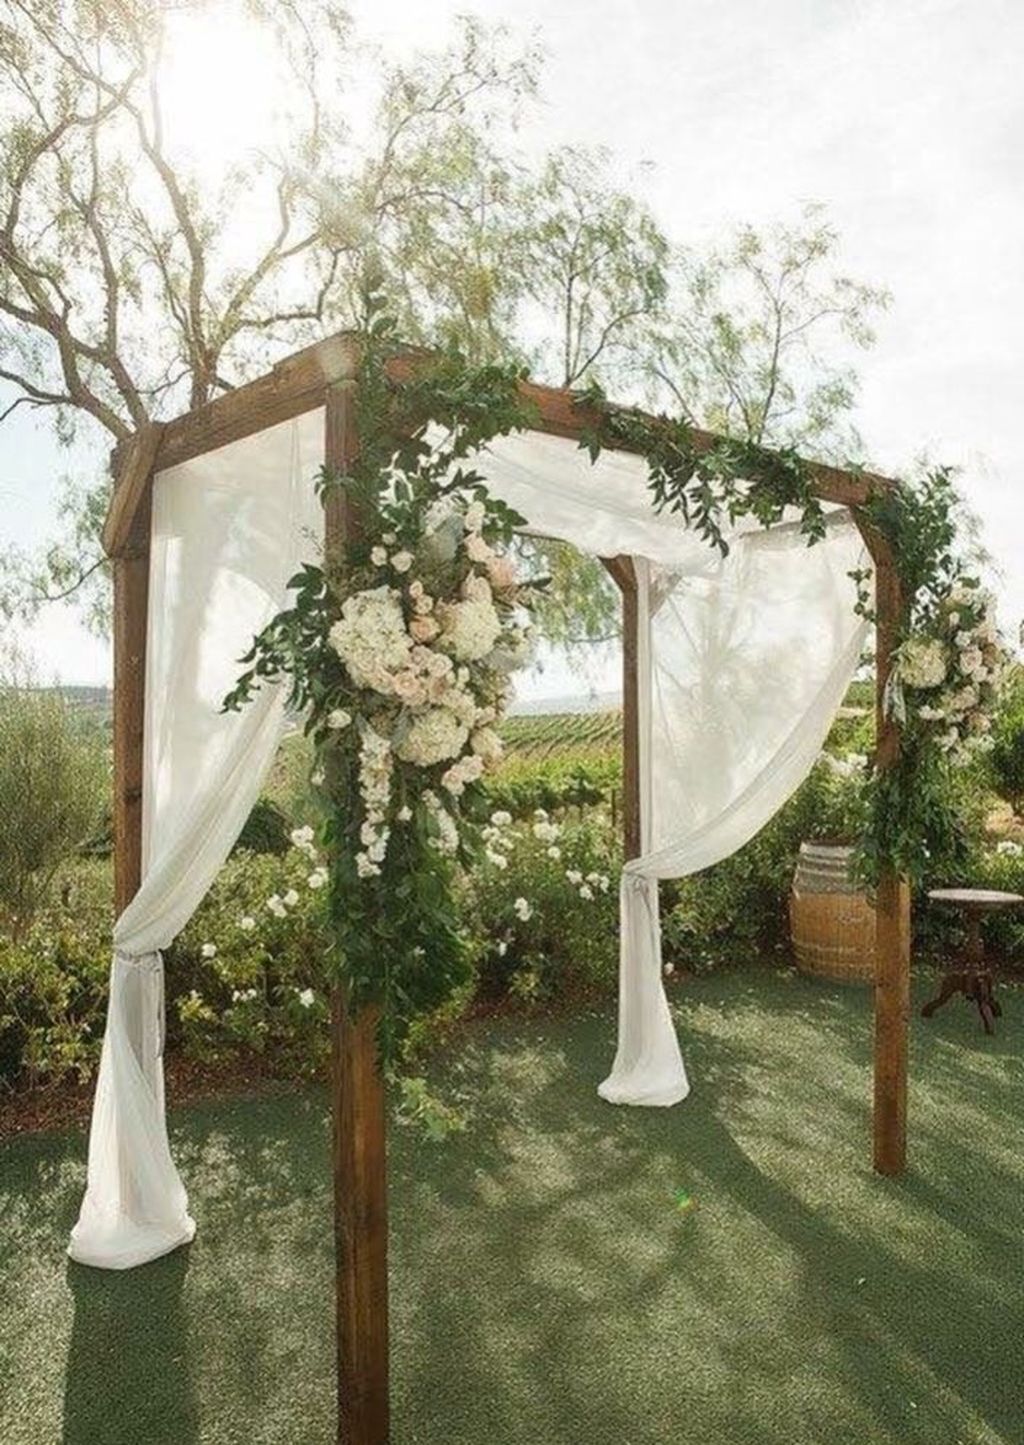 15 garden wedding Decoracion ideas